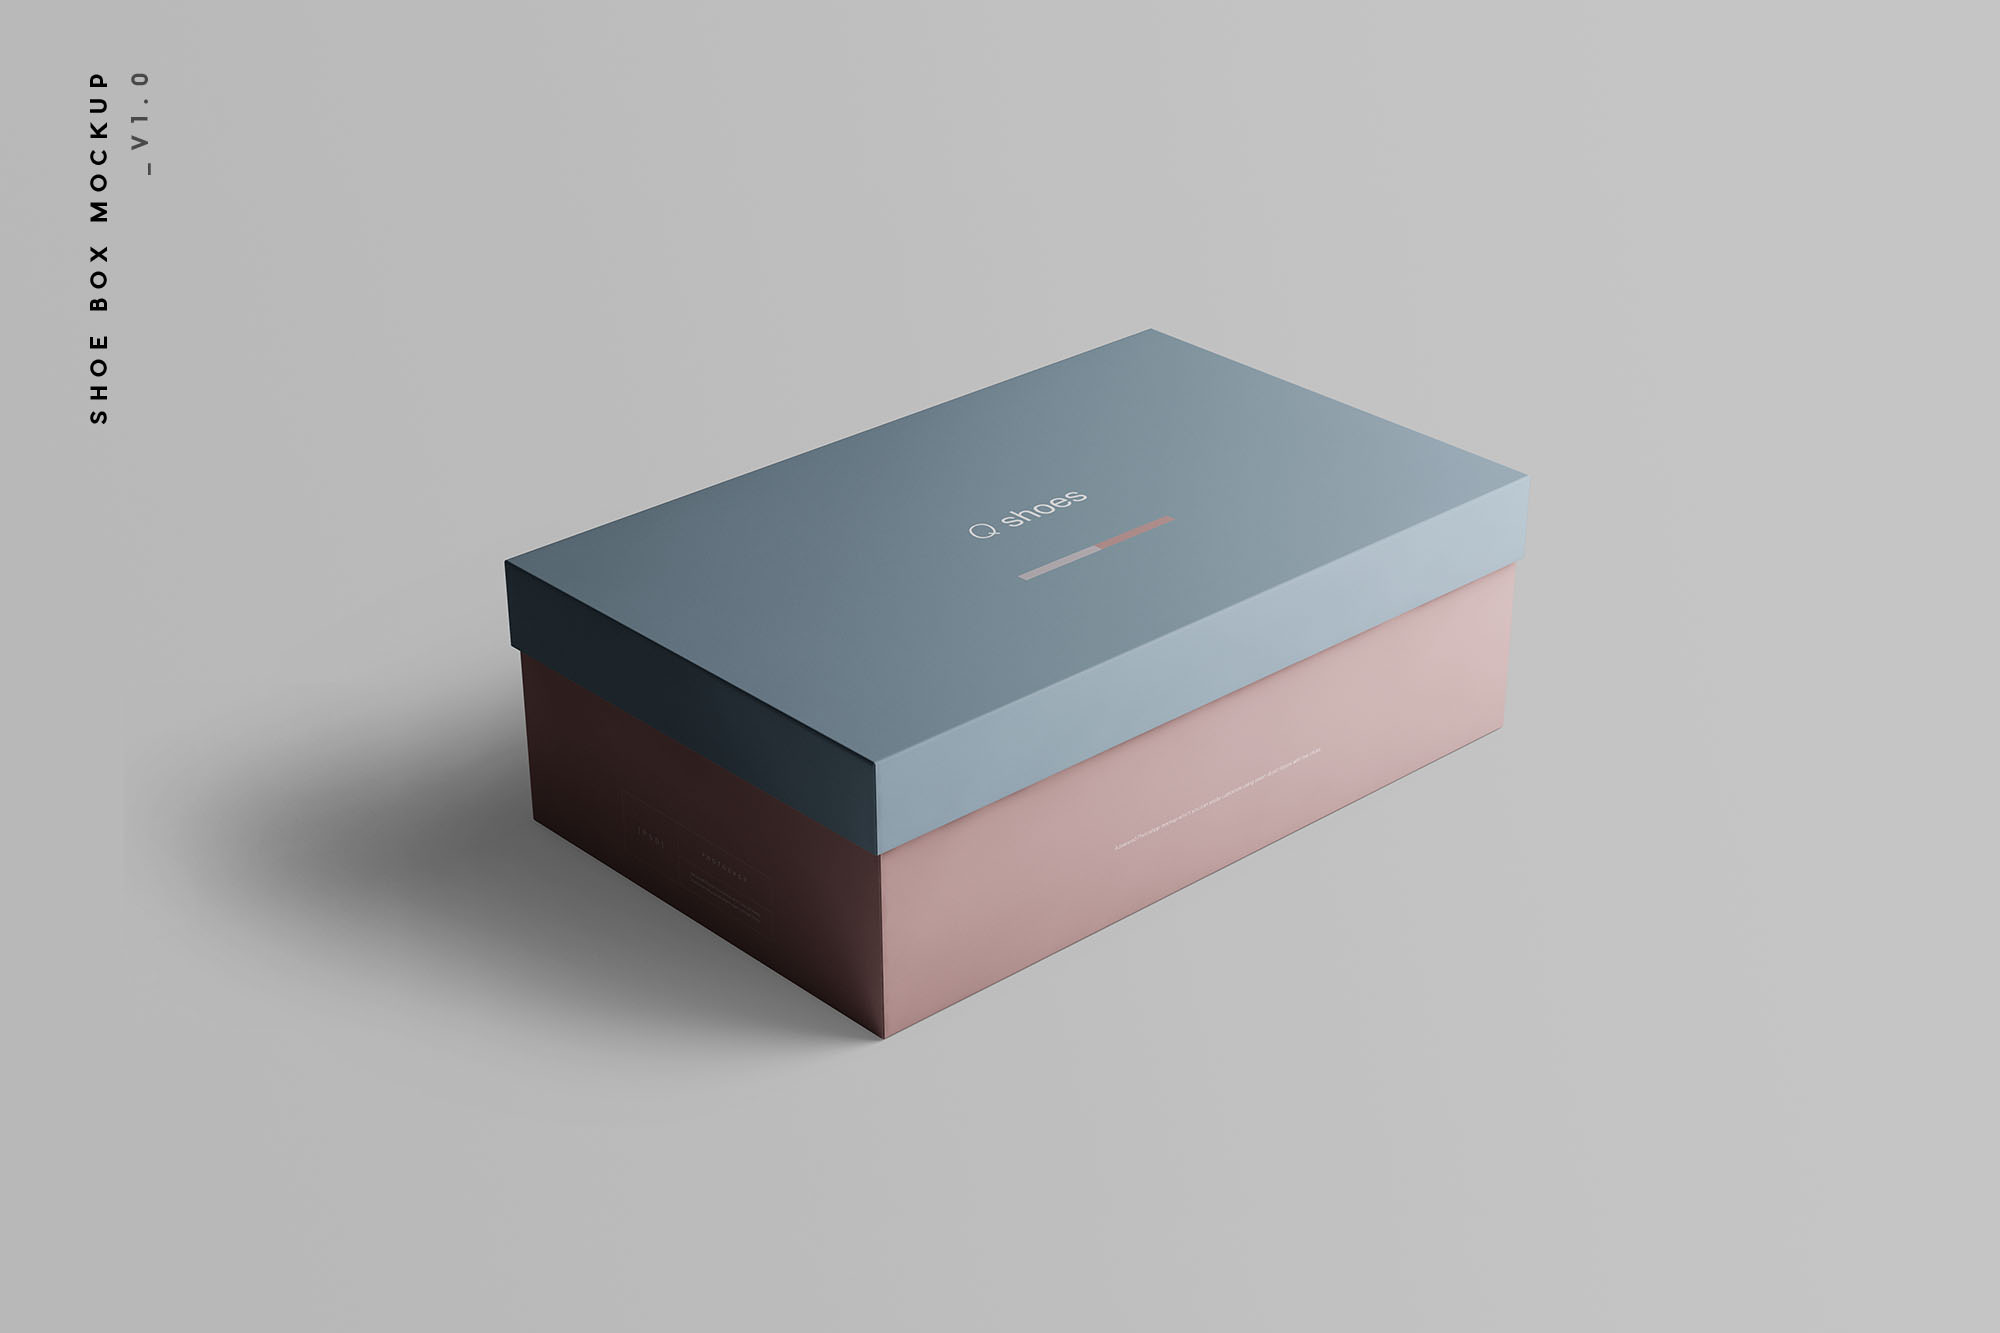 高端女鞋鞋盒外观设计图第一素材精选模板 Shoe Box Mockup插图